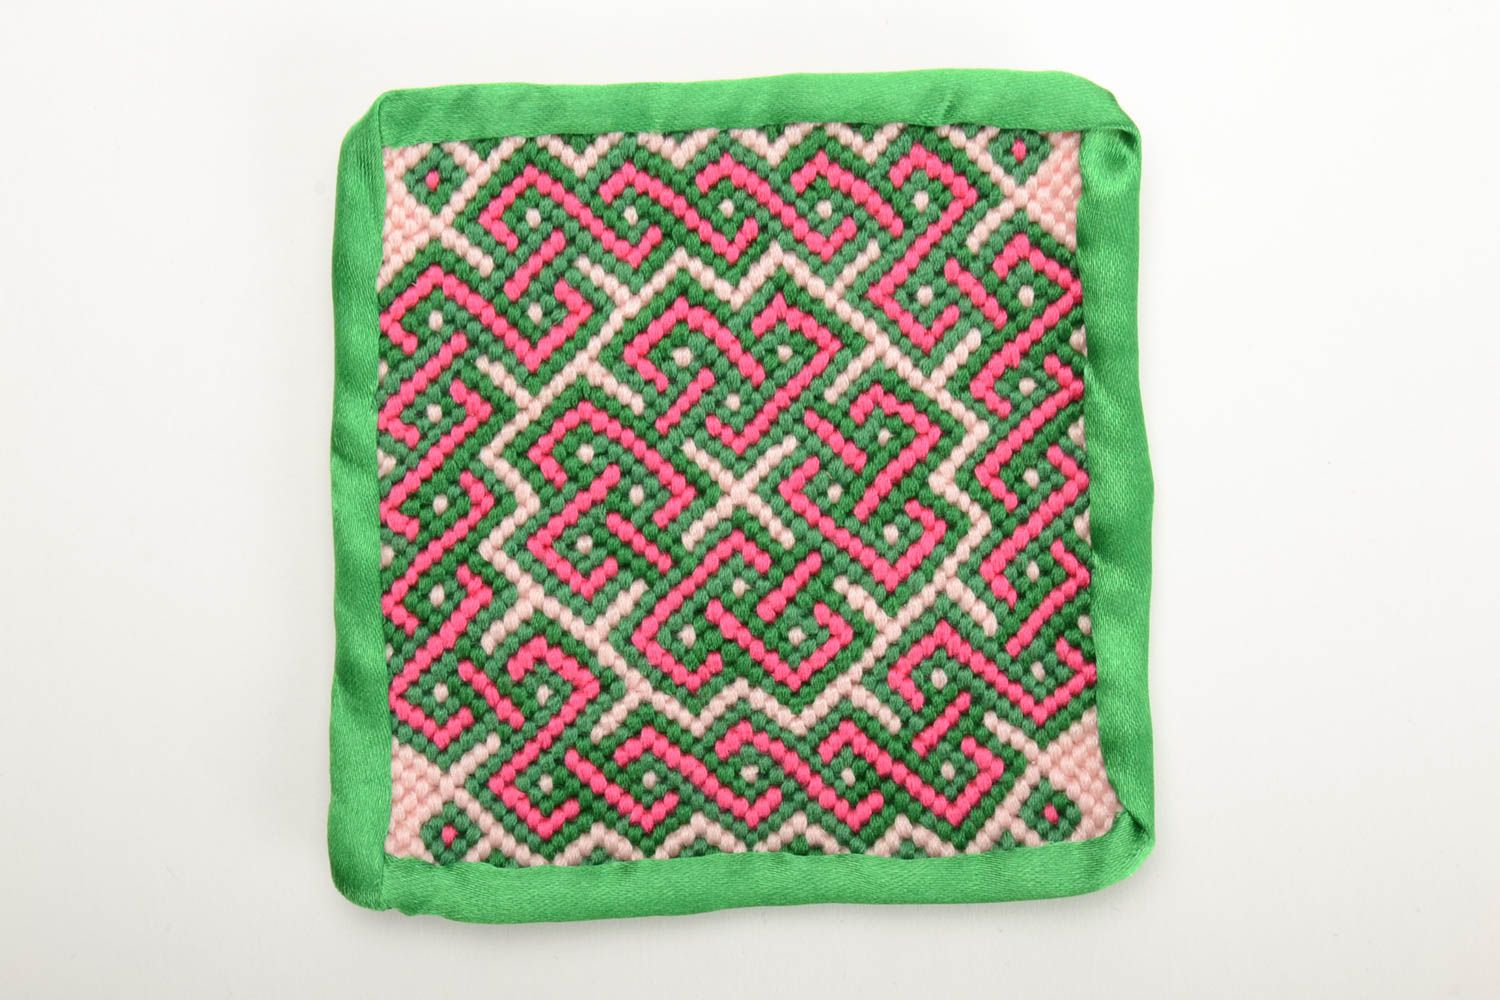 Petite sous-tasse textile verte tressée en fils moulinés faite main originale   photo 2